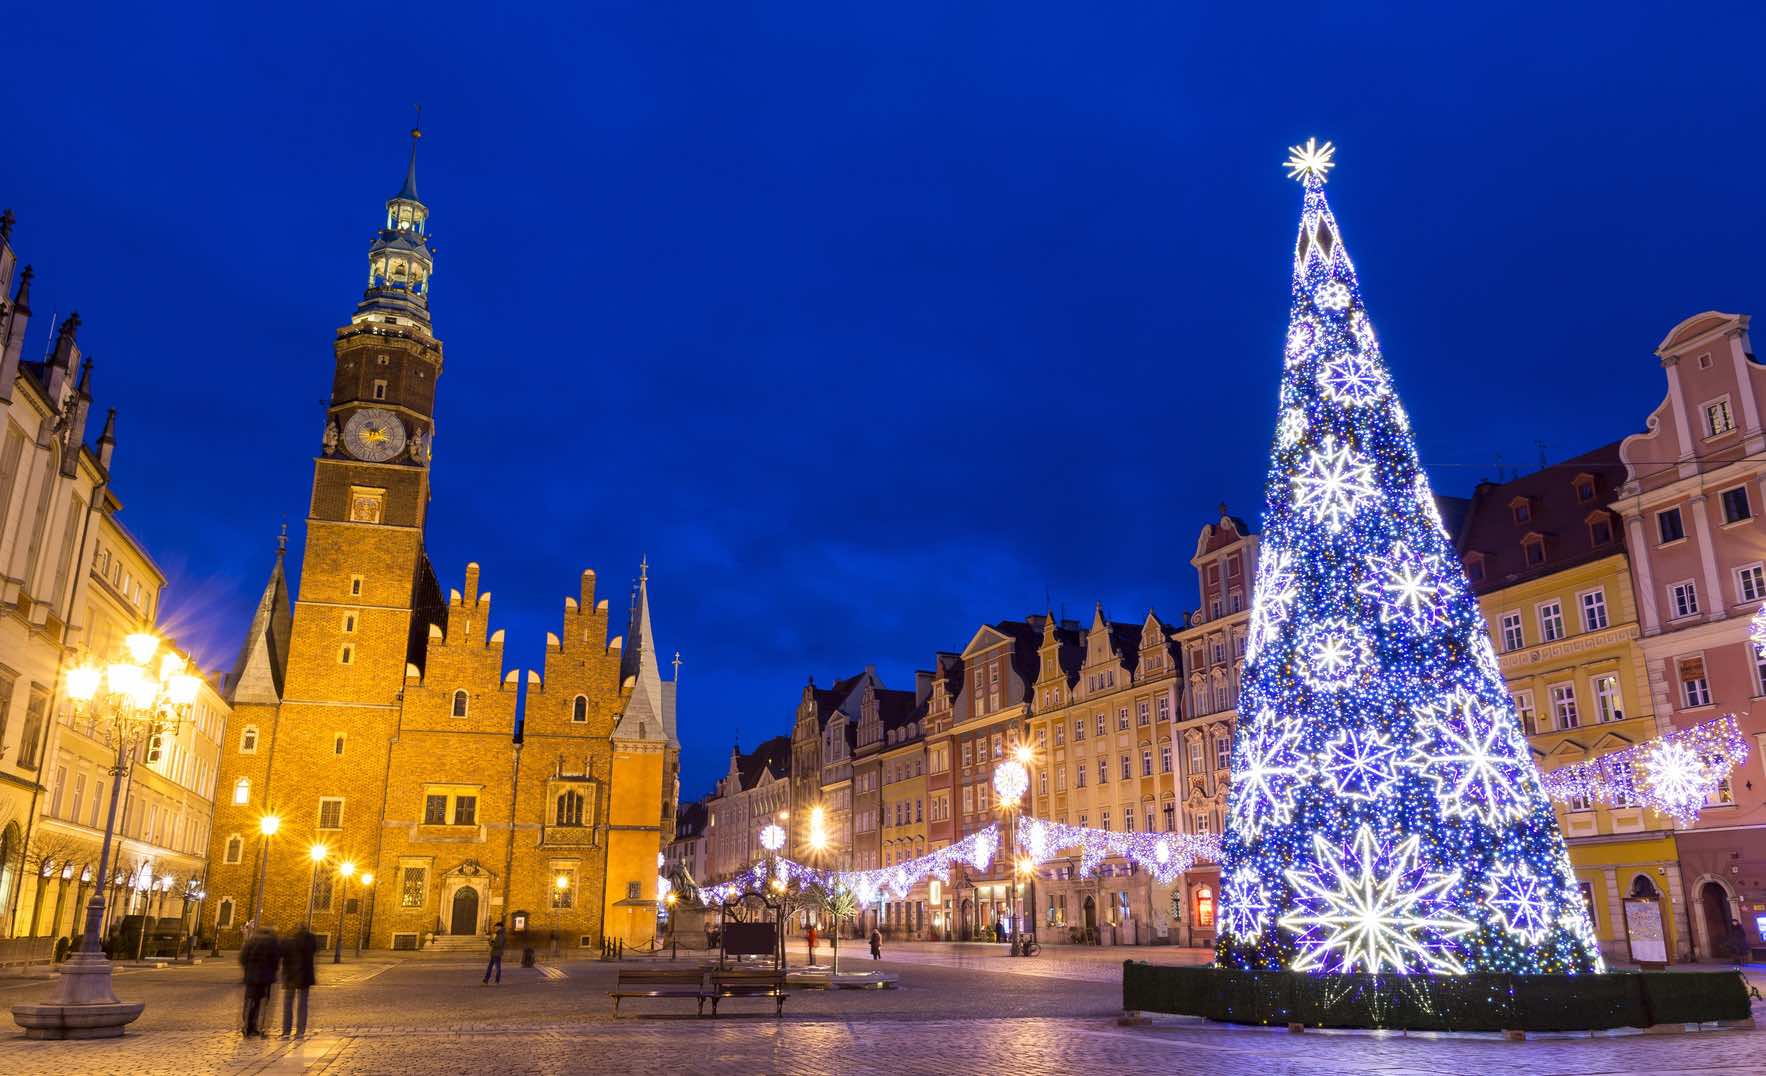 Perche Si Festeggia Natale.Il Natale In Polonia Come Si Festeggia Il Natale A Breslavia